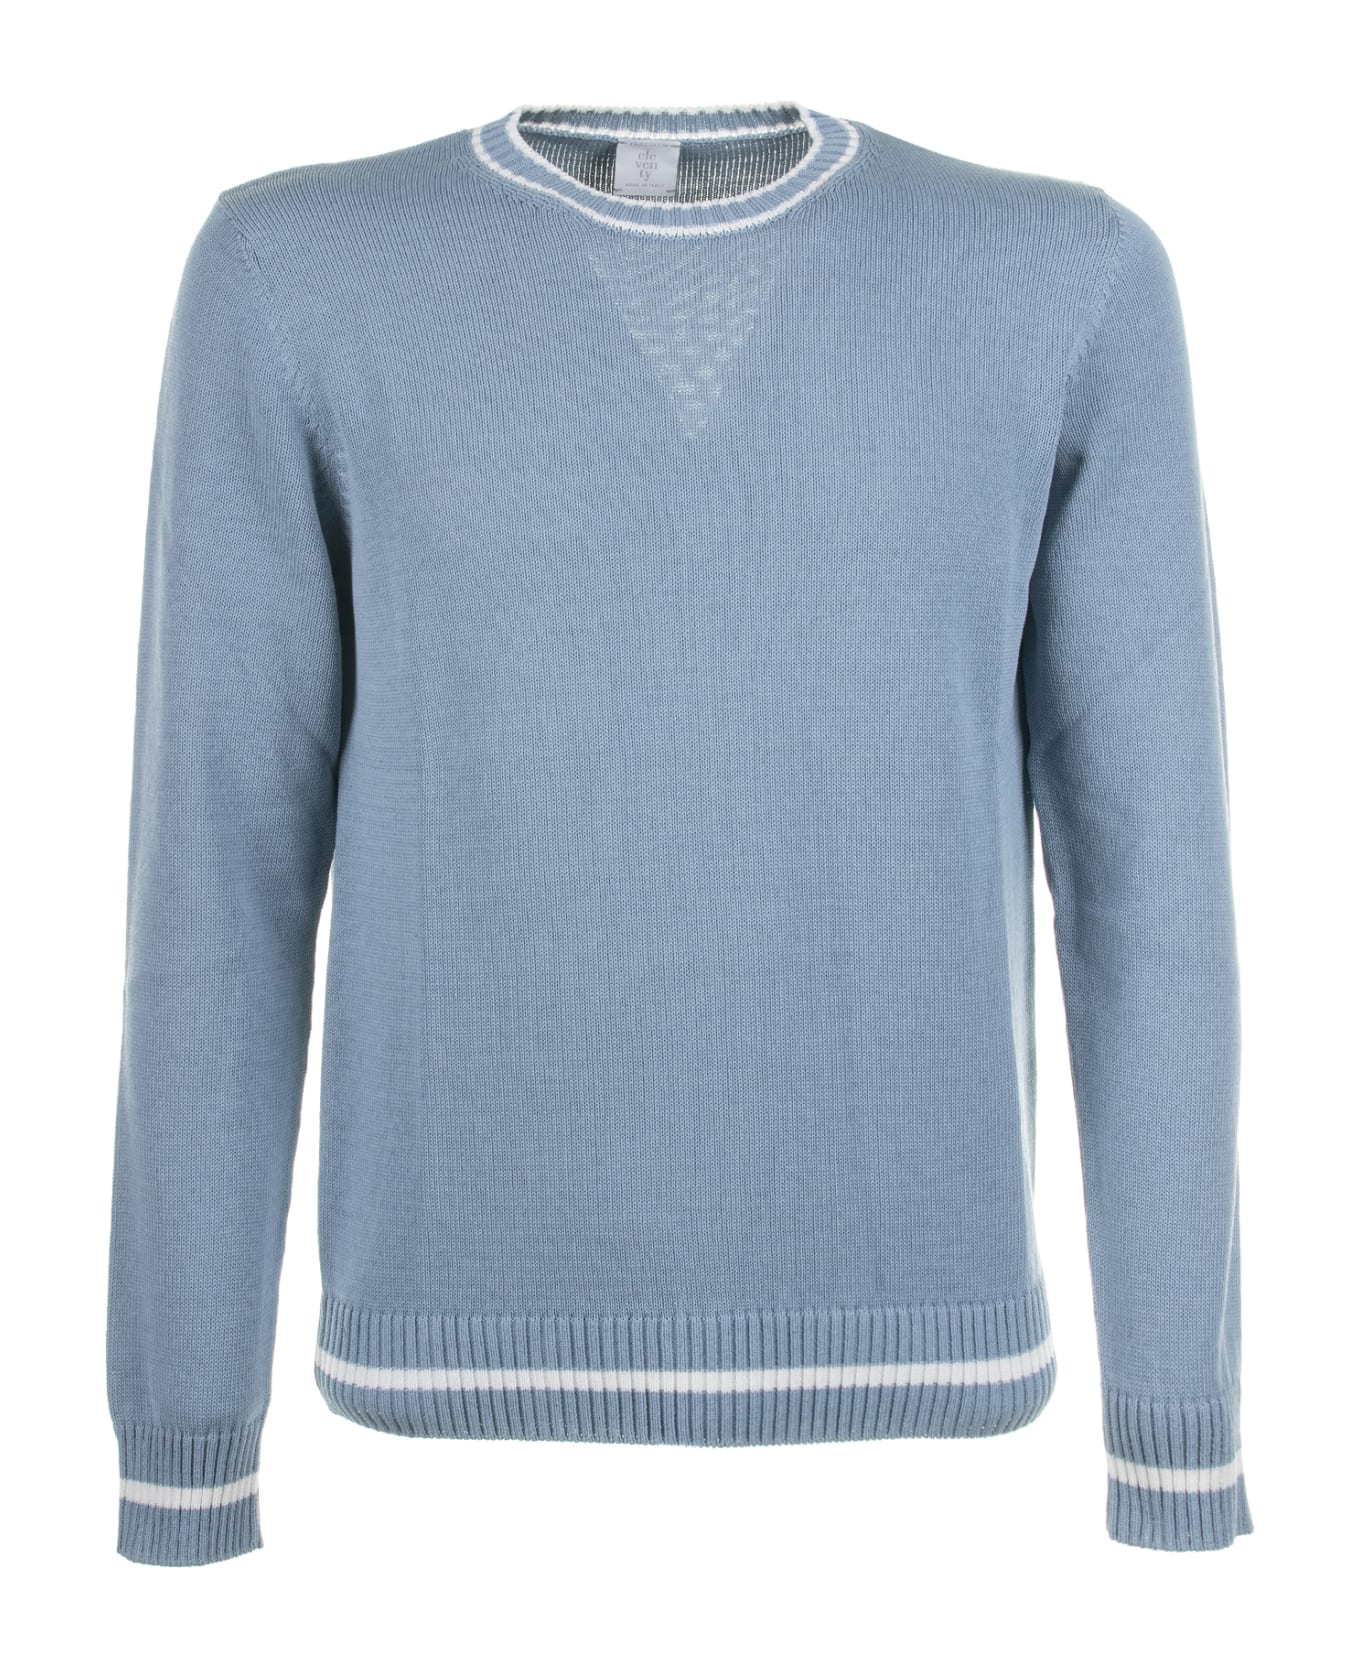 Eleventy Light Blue Crew-neck Sweater - DENIM BIANCO